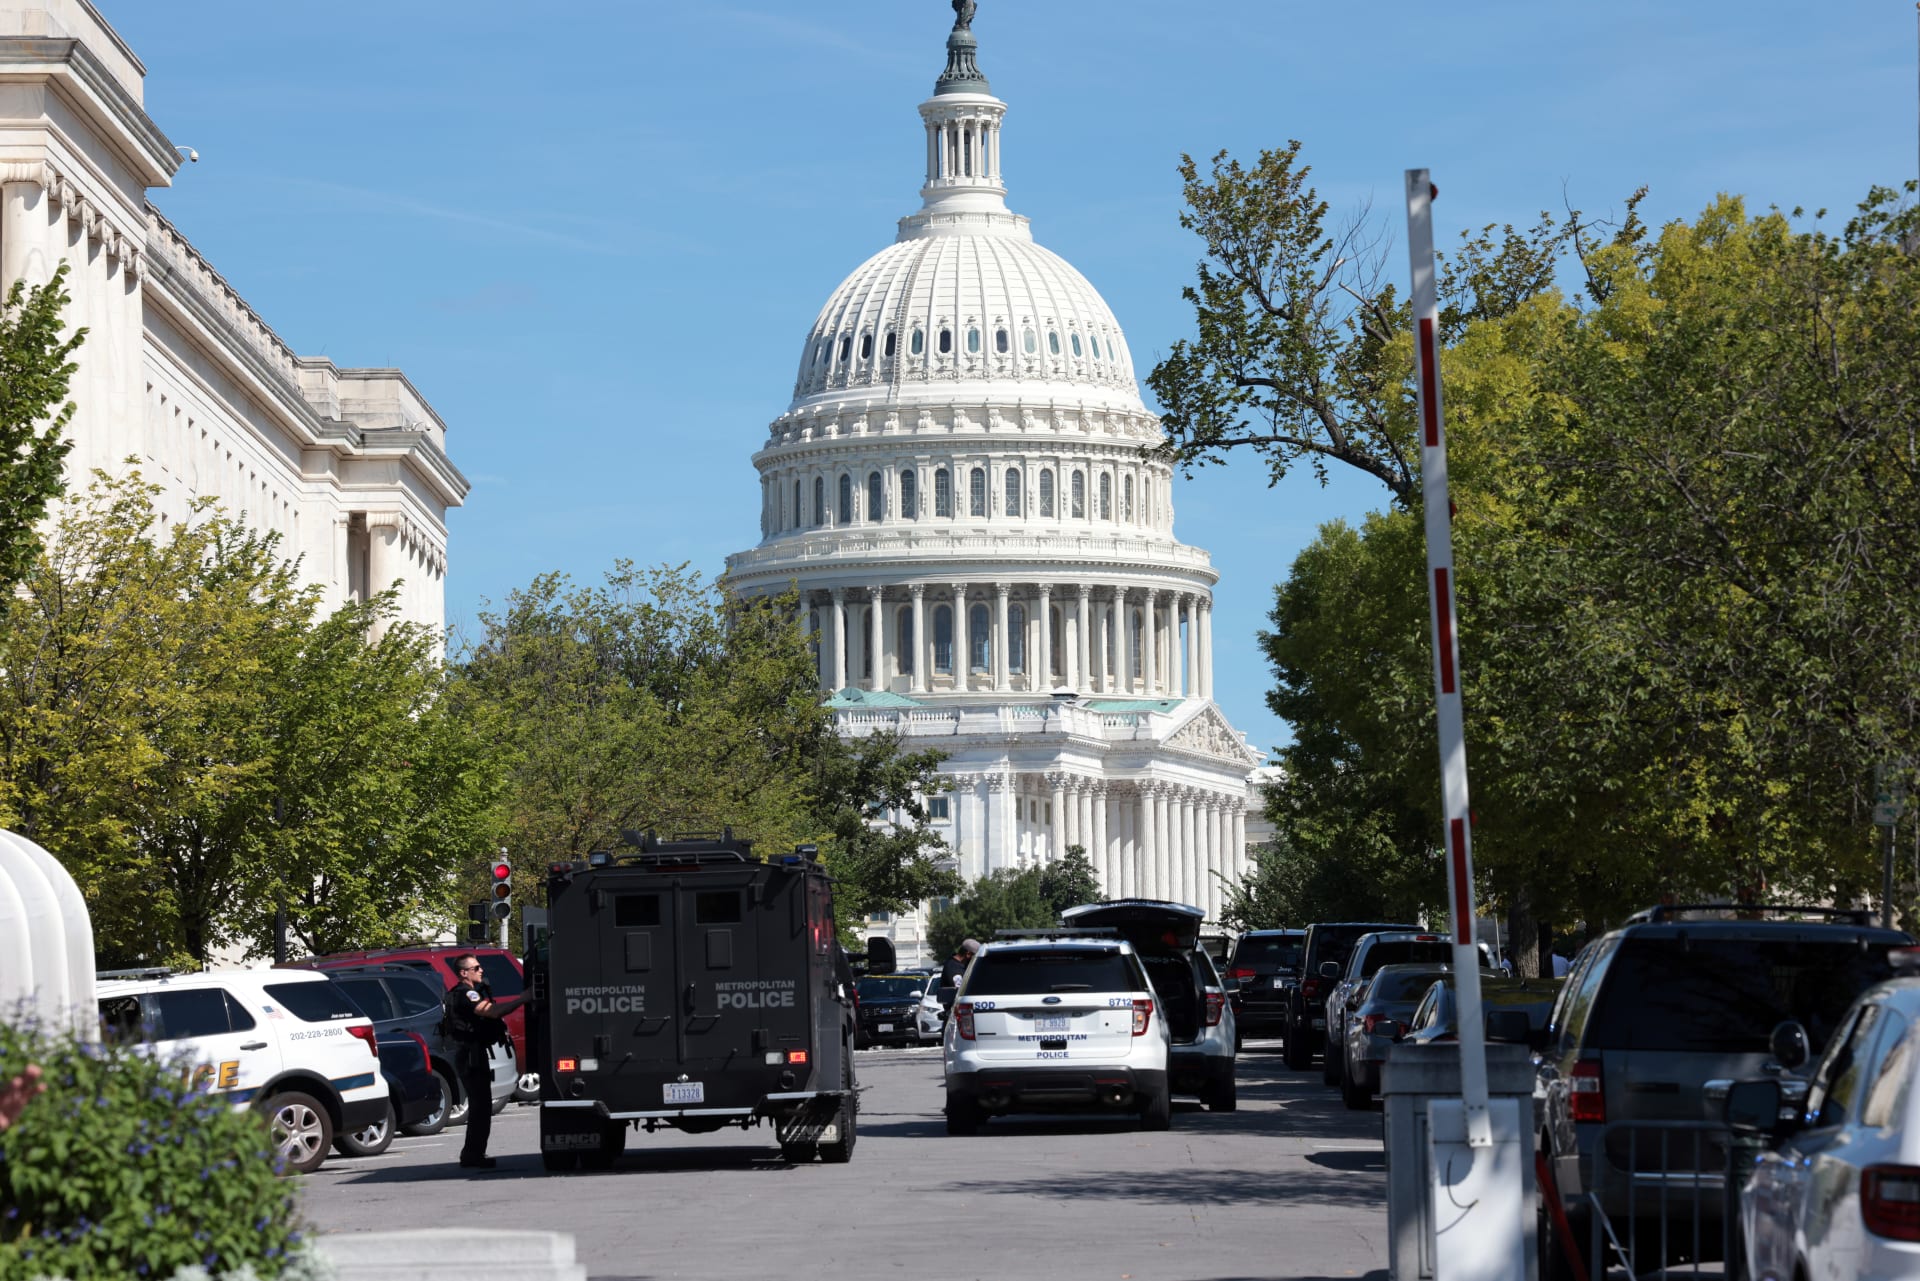 شرطة الكونغرس تستجيب لادعاء بوجود عبوة ناسفة في شاحنة صغيرة بالقرب من مكتبة الكونغرس، في 19 أغسطس